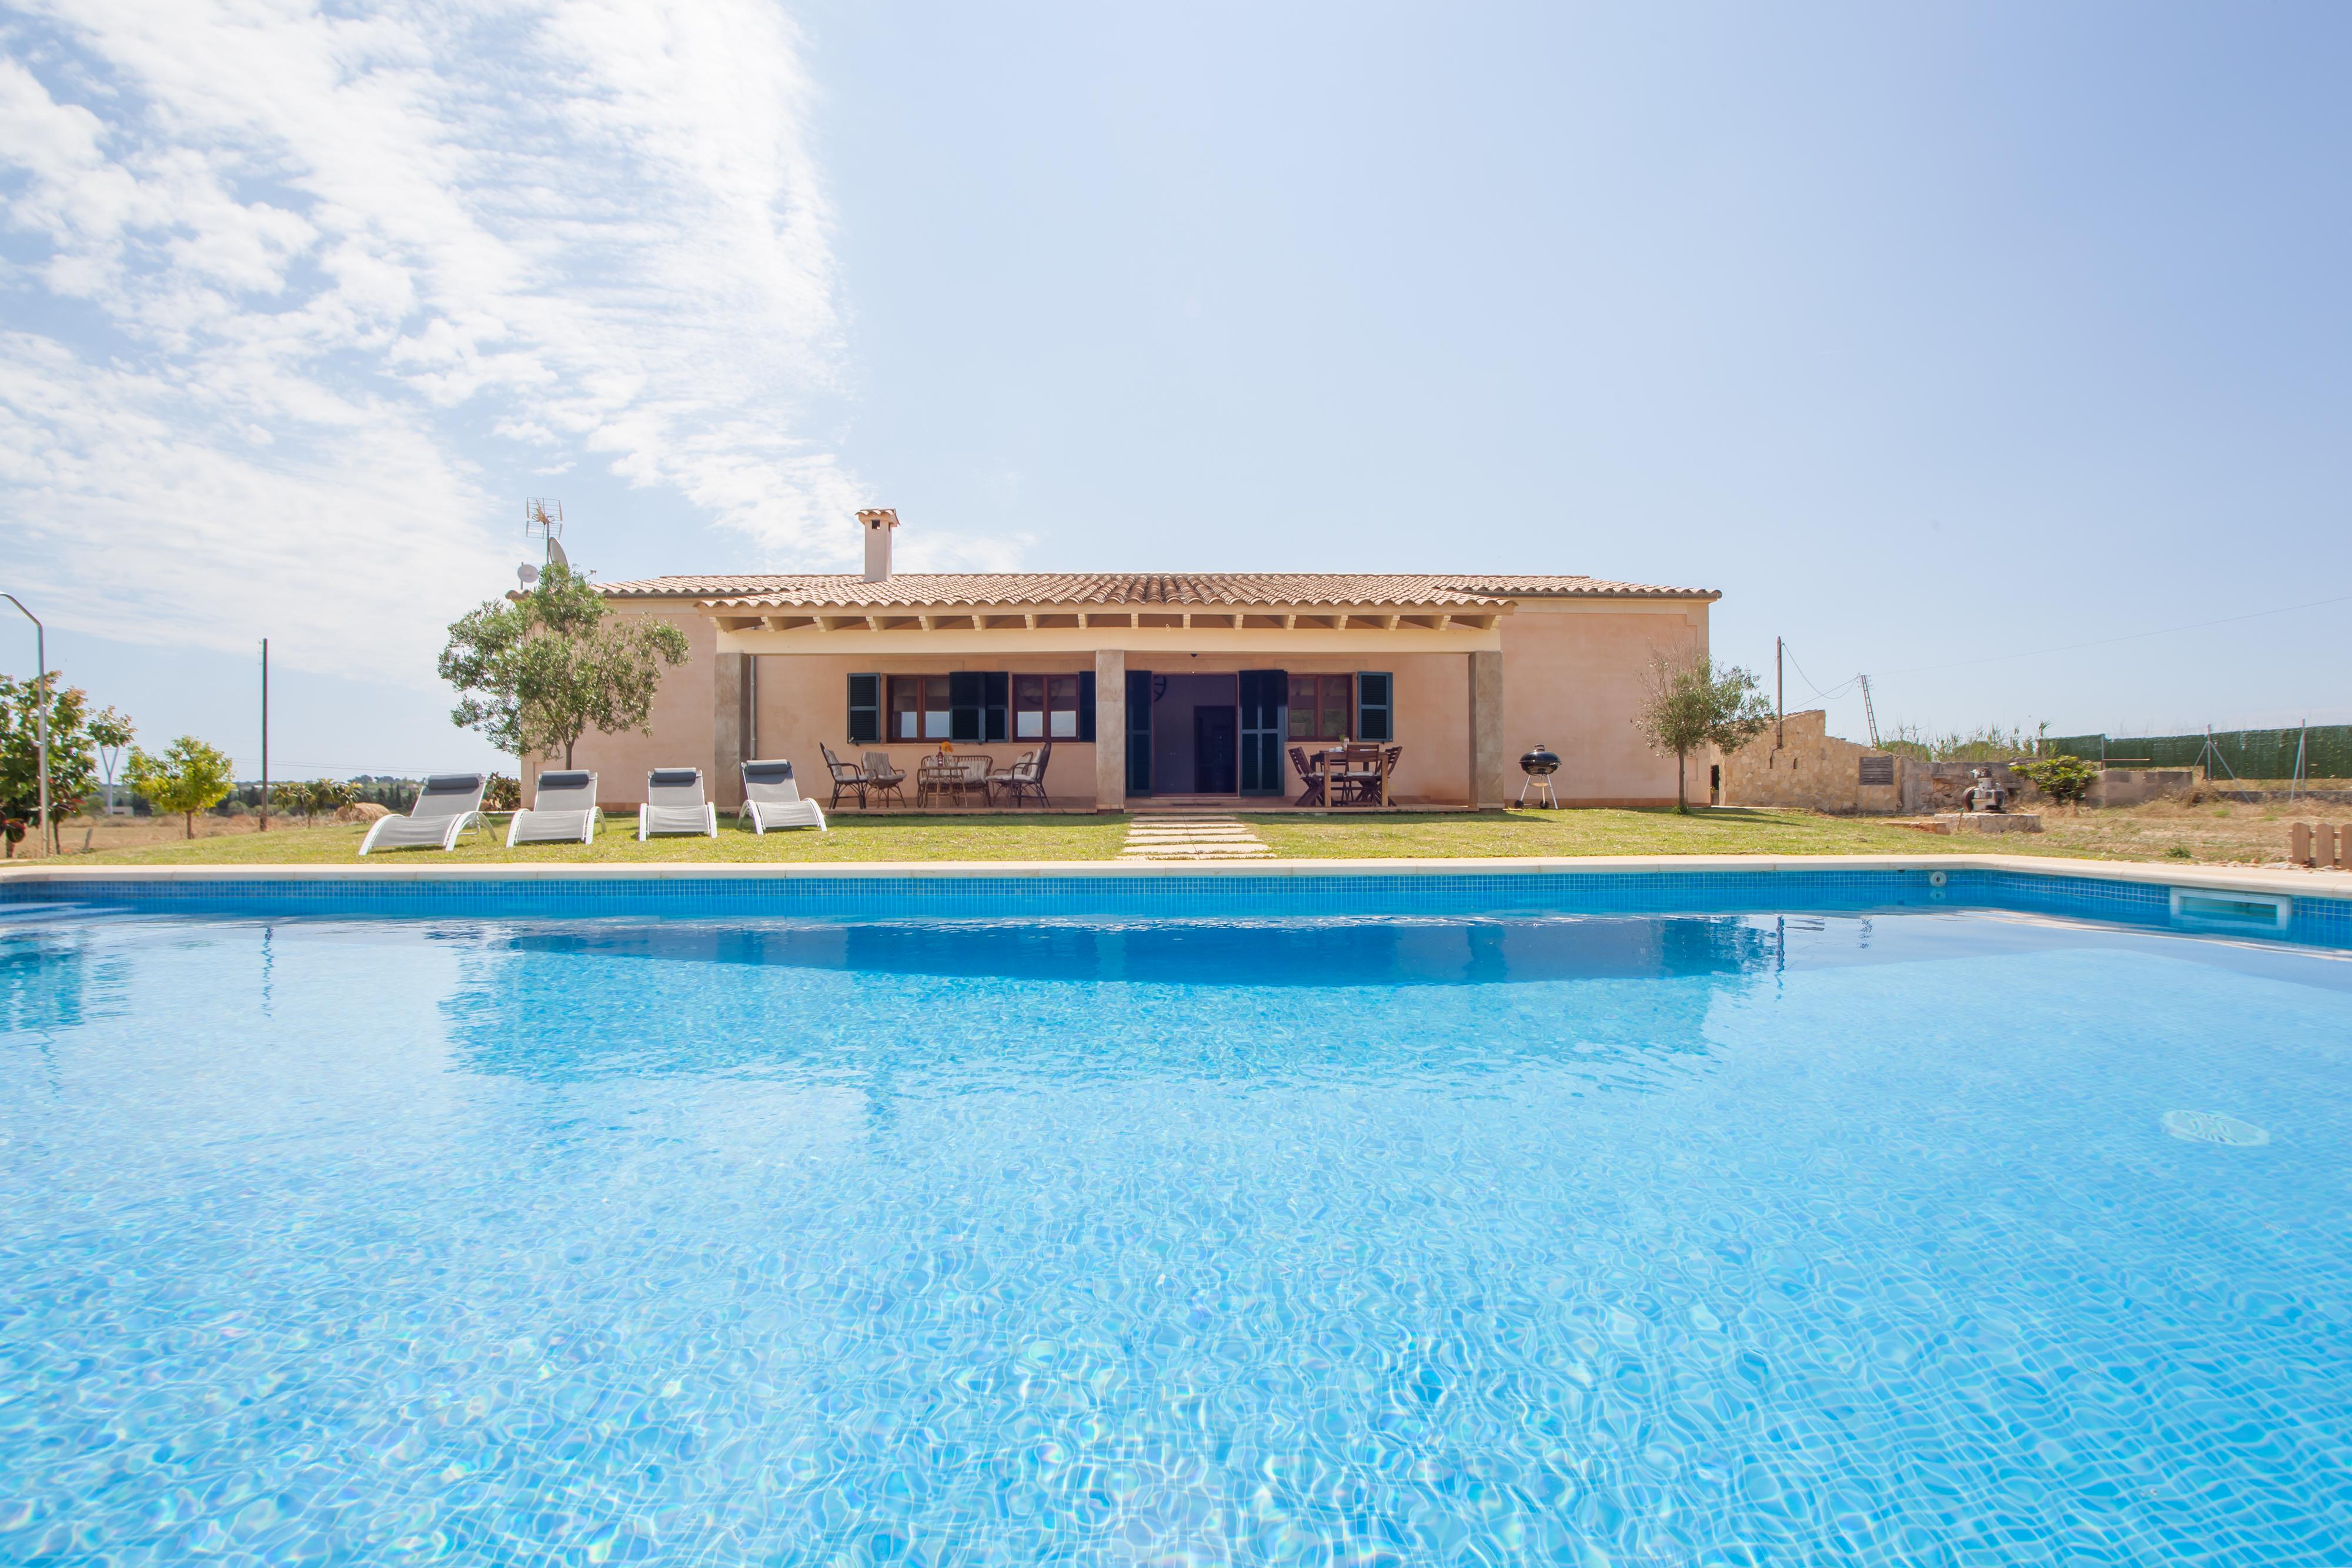 Property Image 1 - S’ESTACIO - Villa with private pool in Muro. Free WiFi